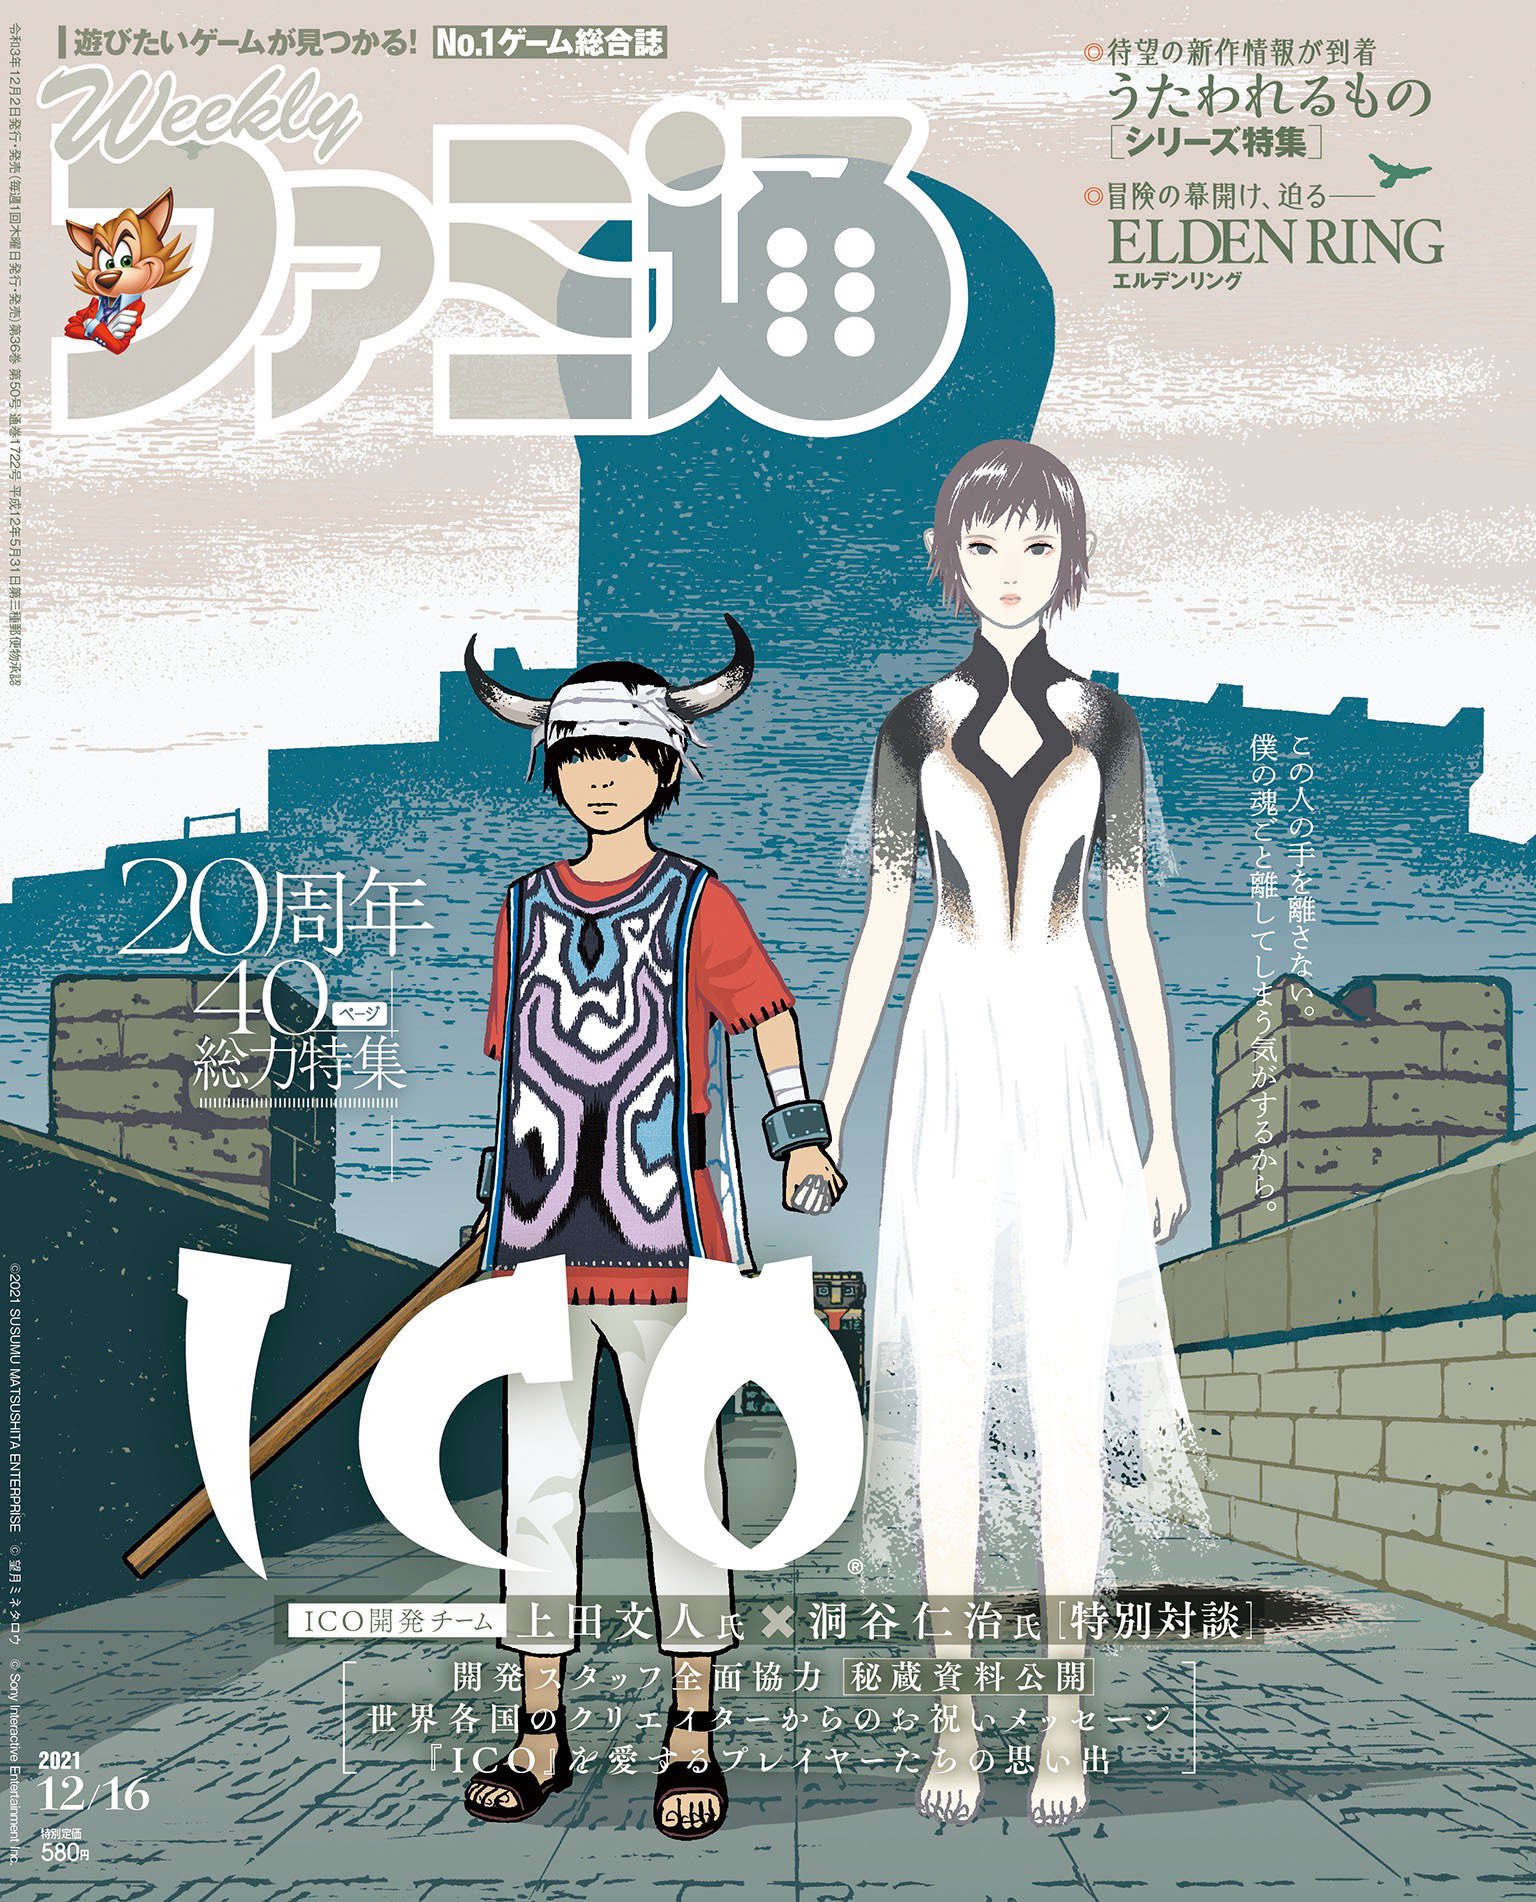 Famitsu December 16th cover